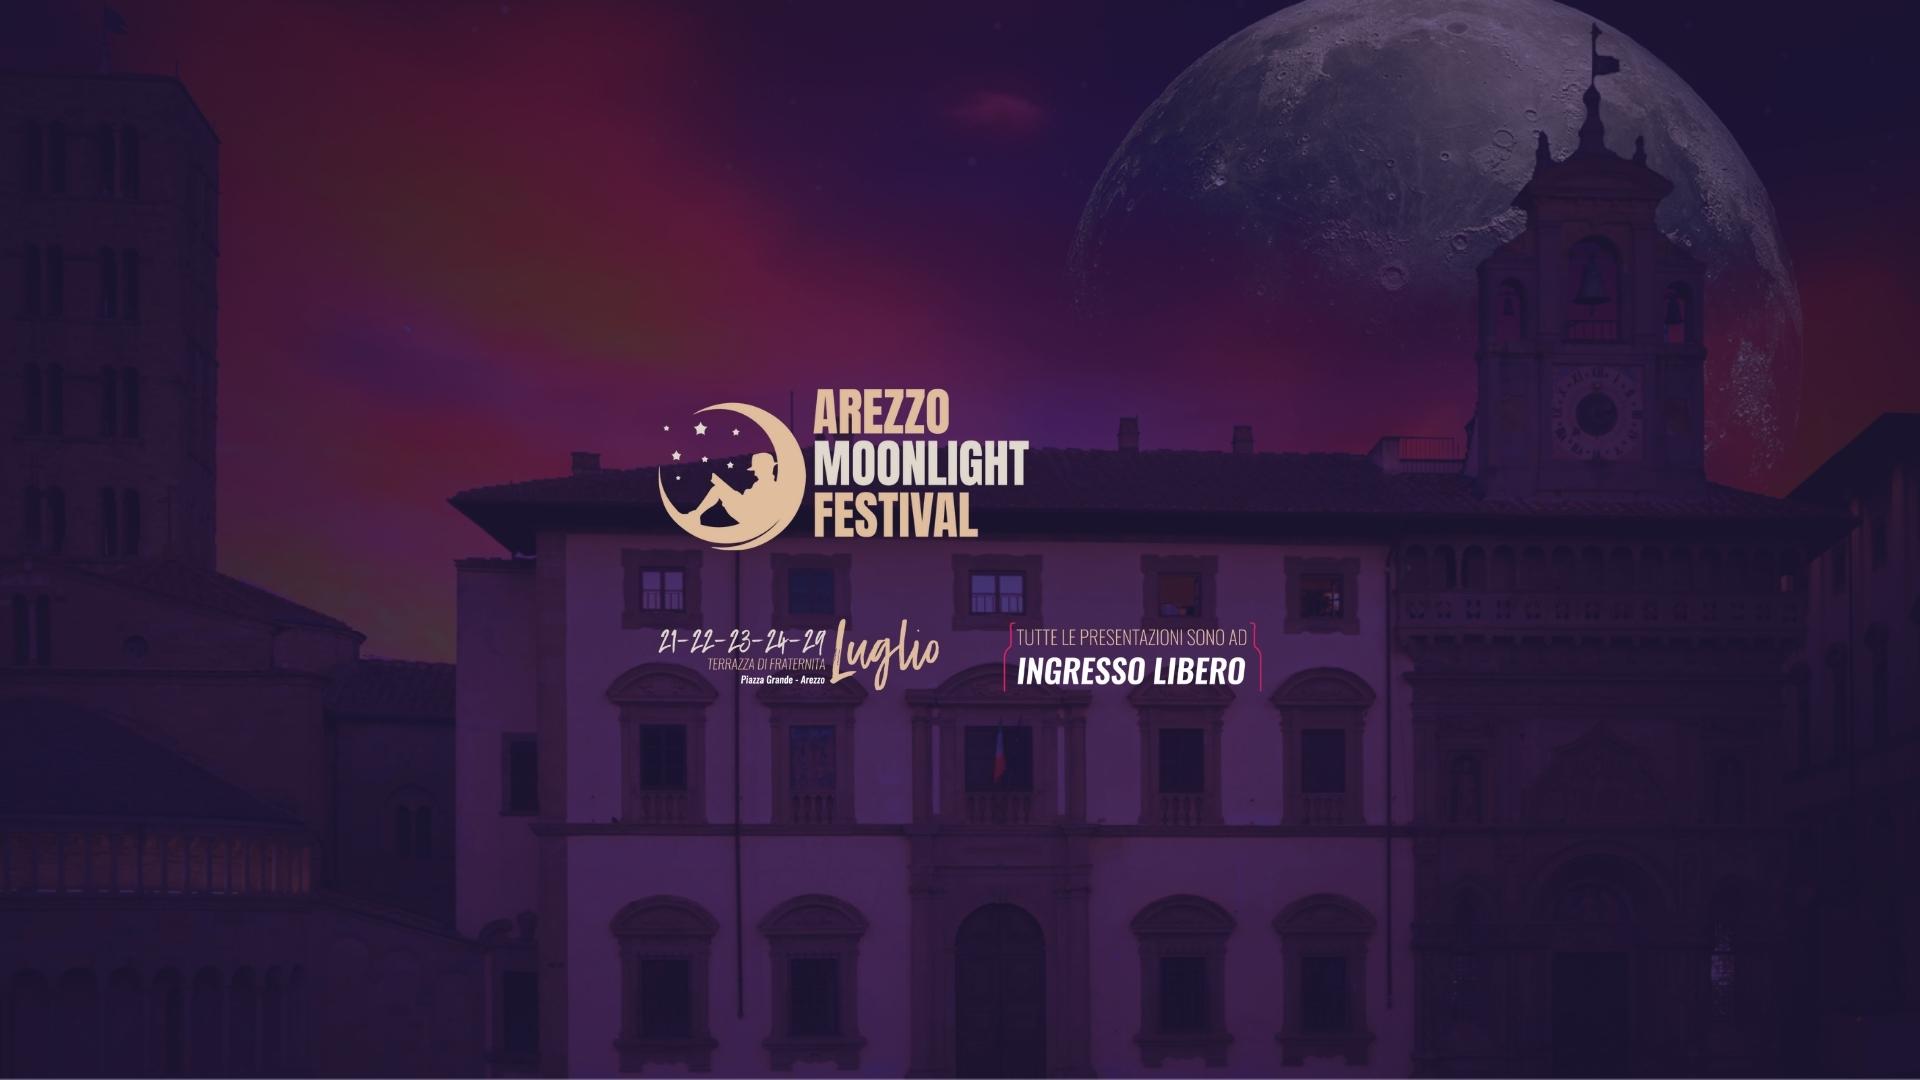 Arezzo Moonlight Festival: 3 gli autori protagonisti della serata di venerdì 22 luglio